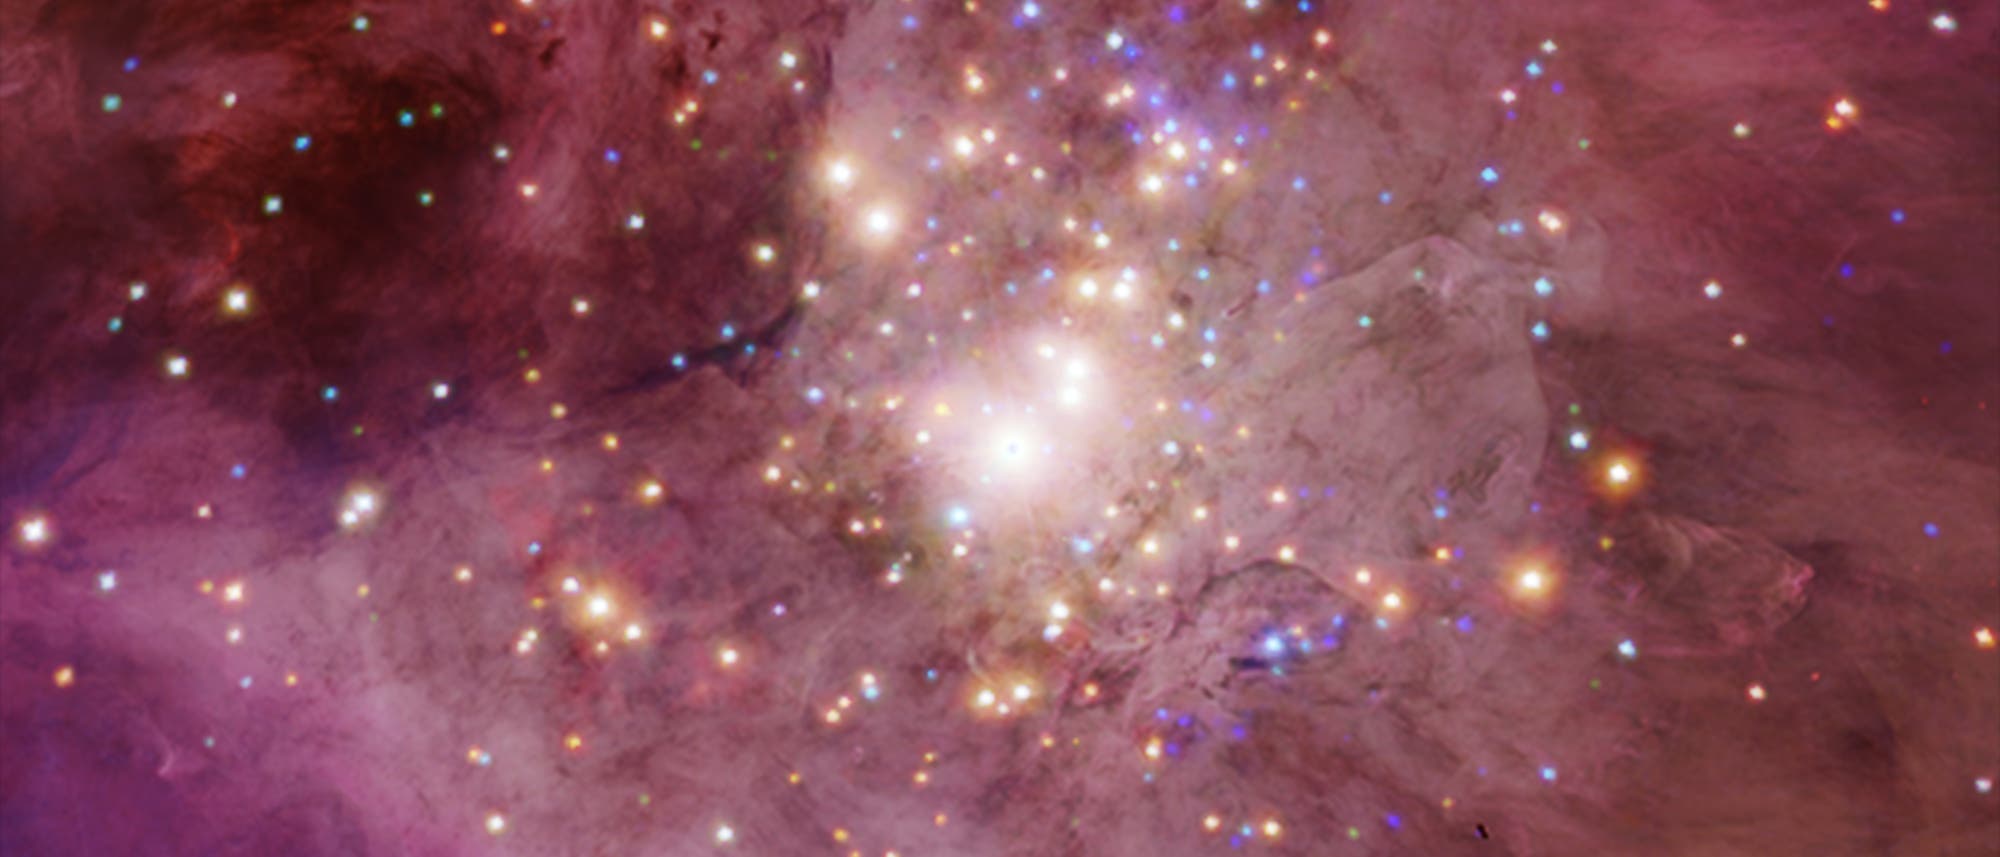 Kompositbild des Orion-Nebels